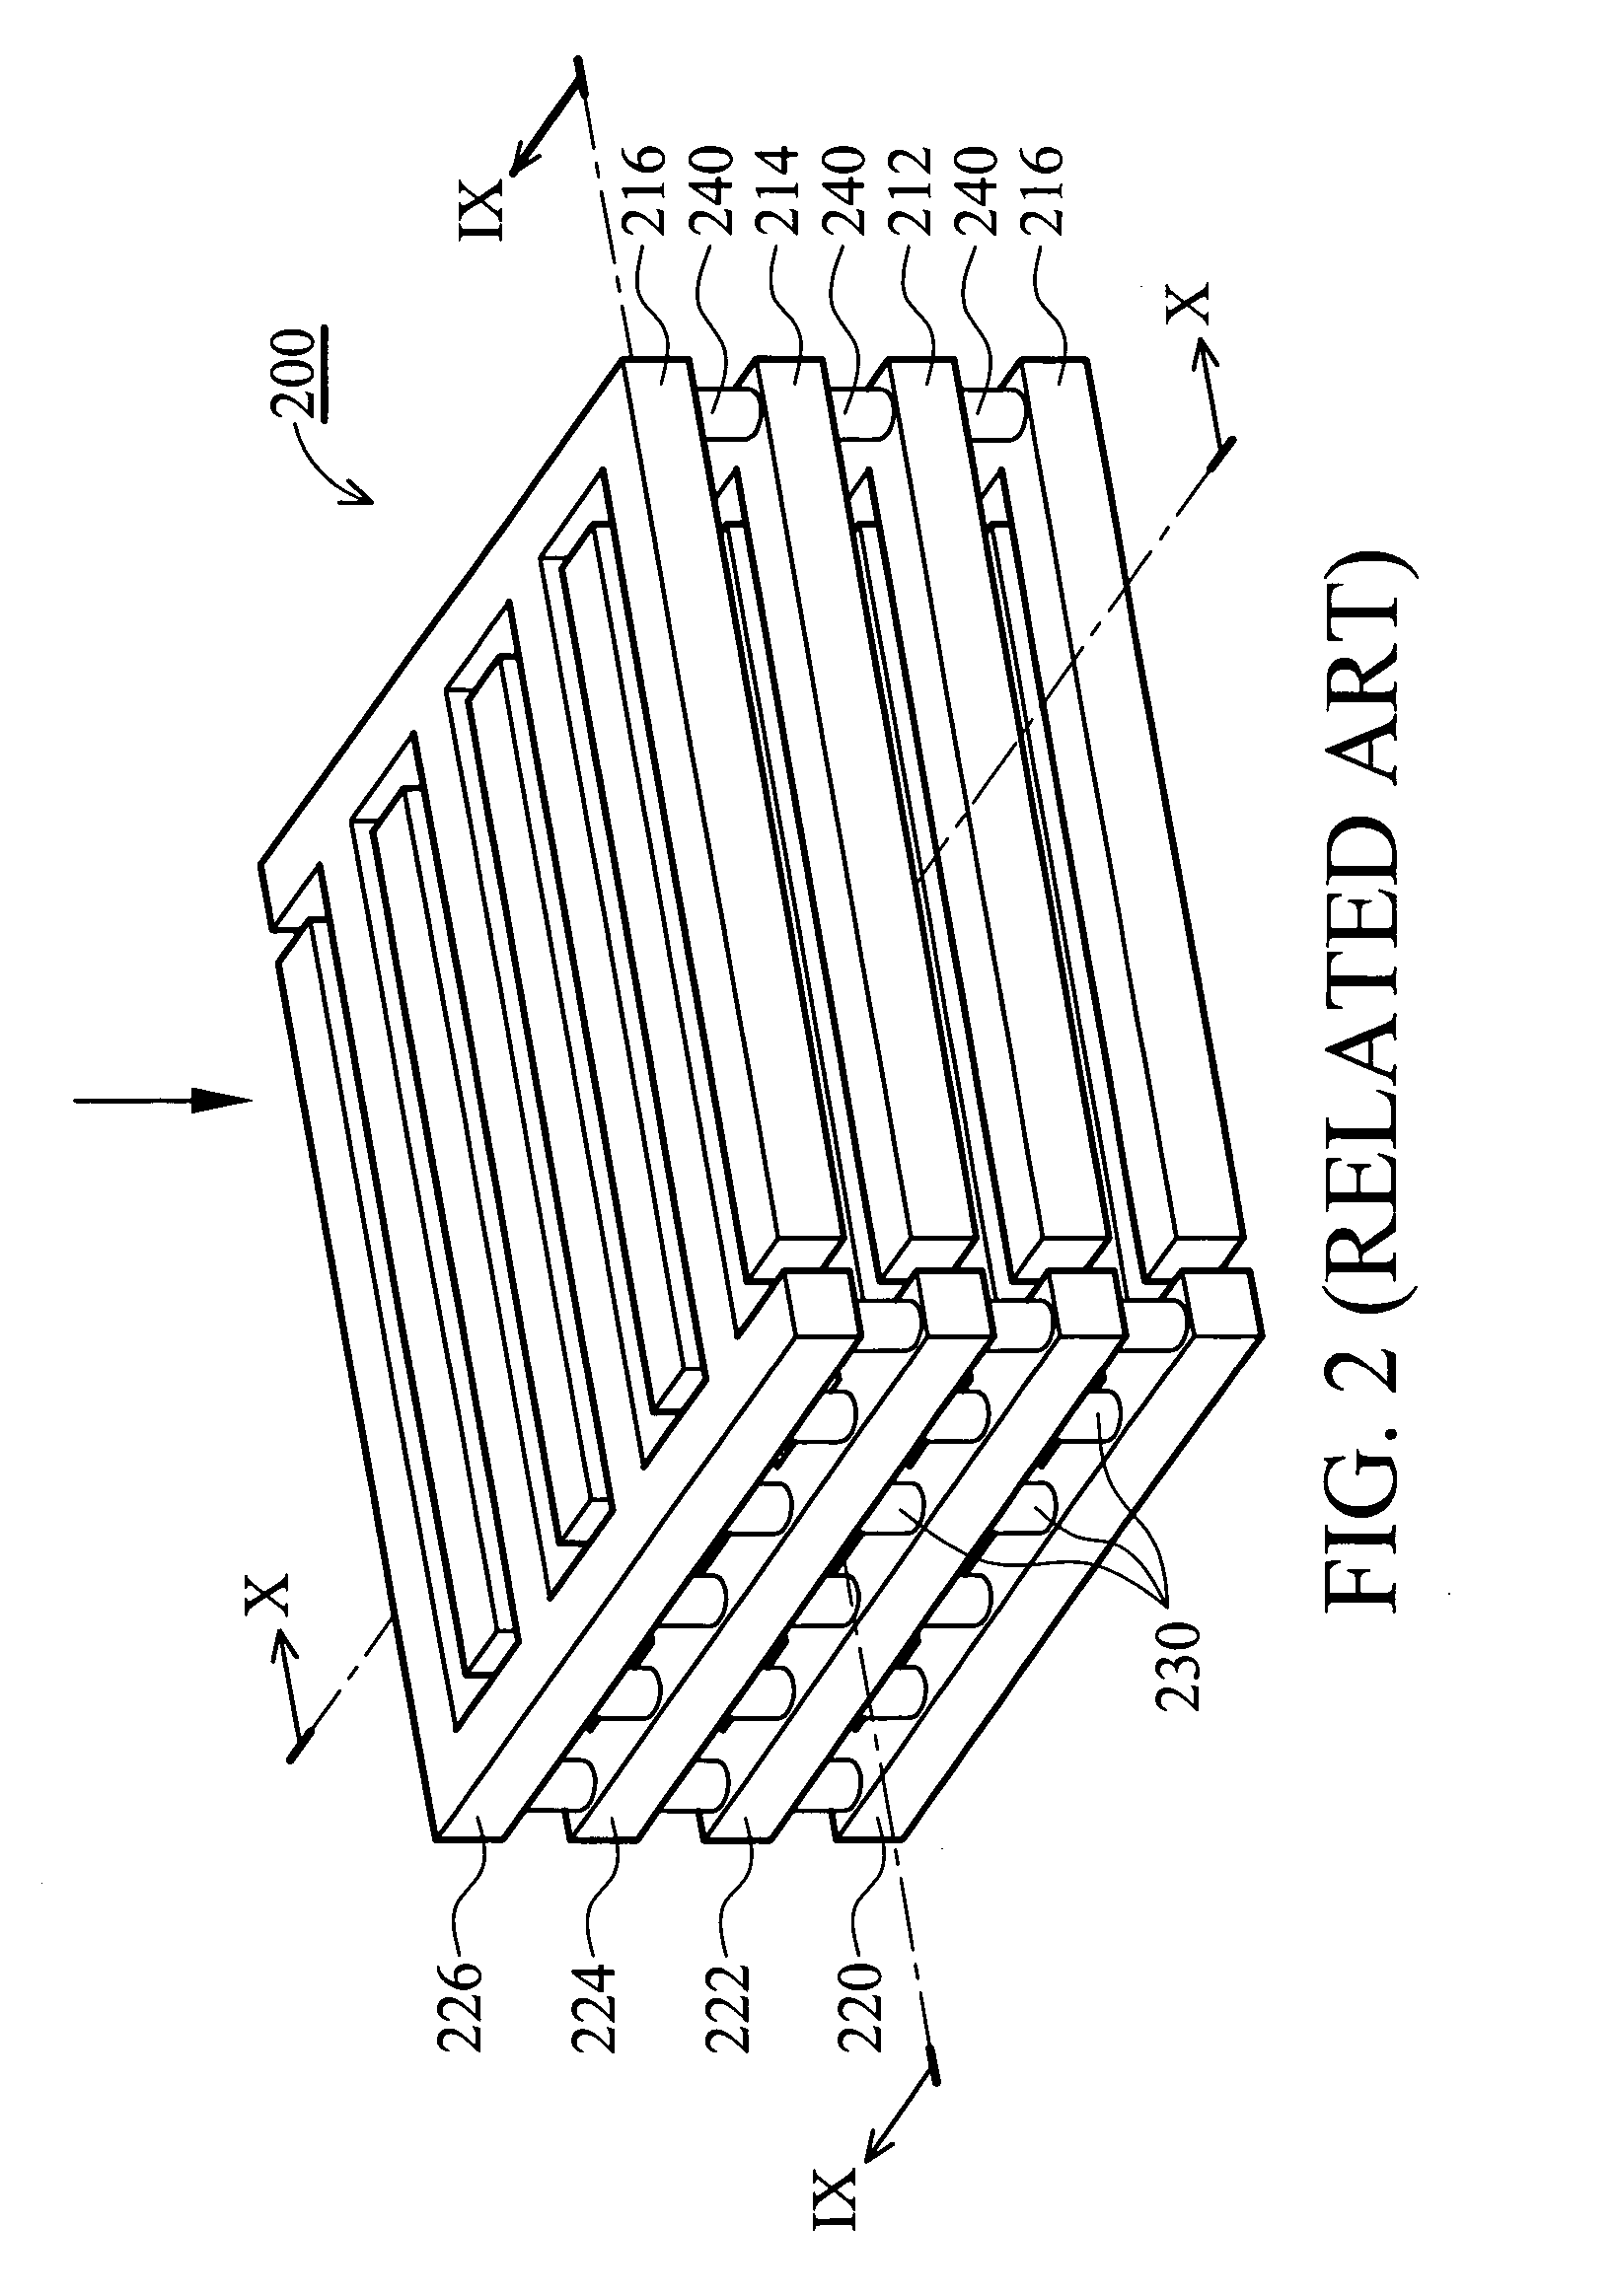 Interdigitized capacitor